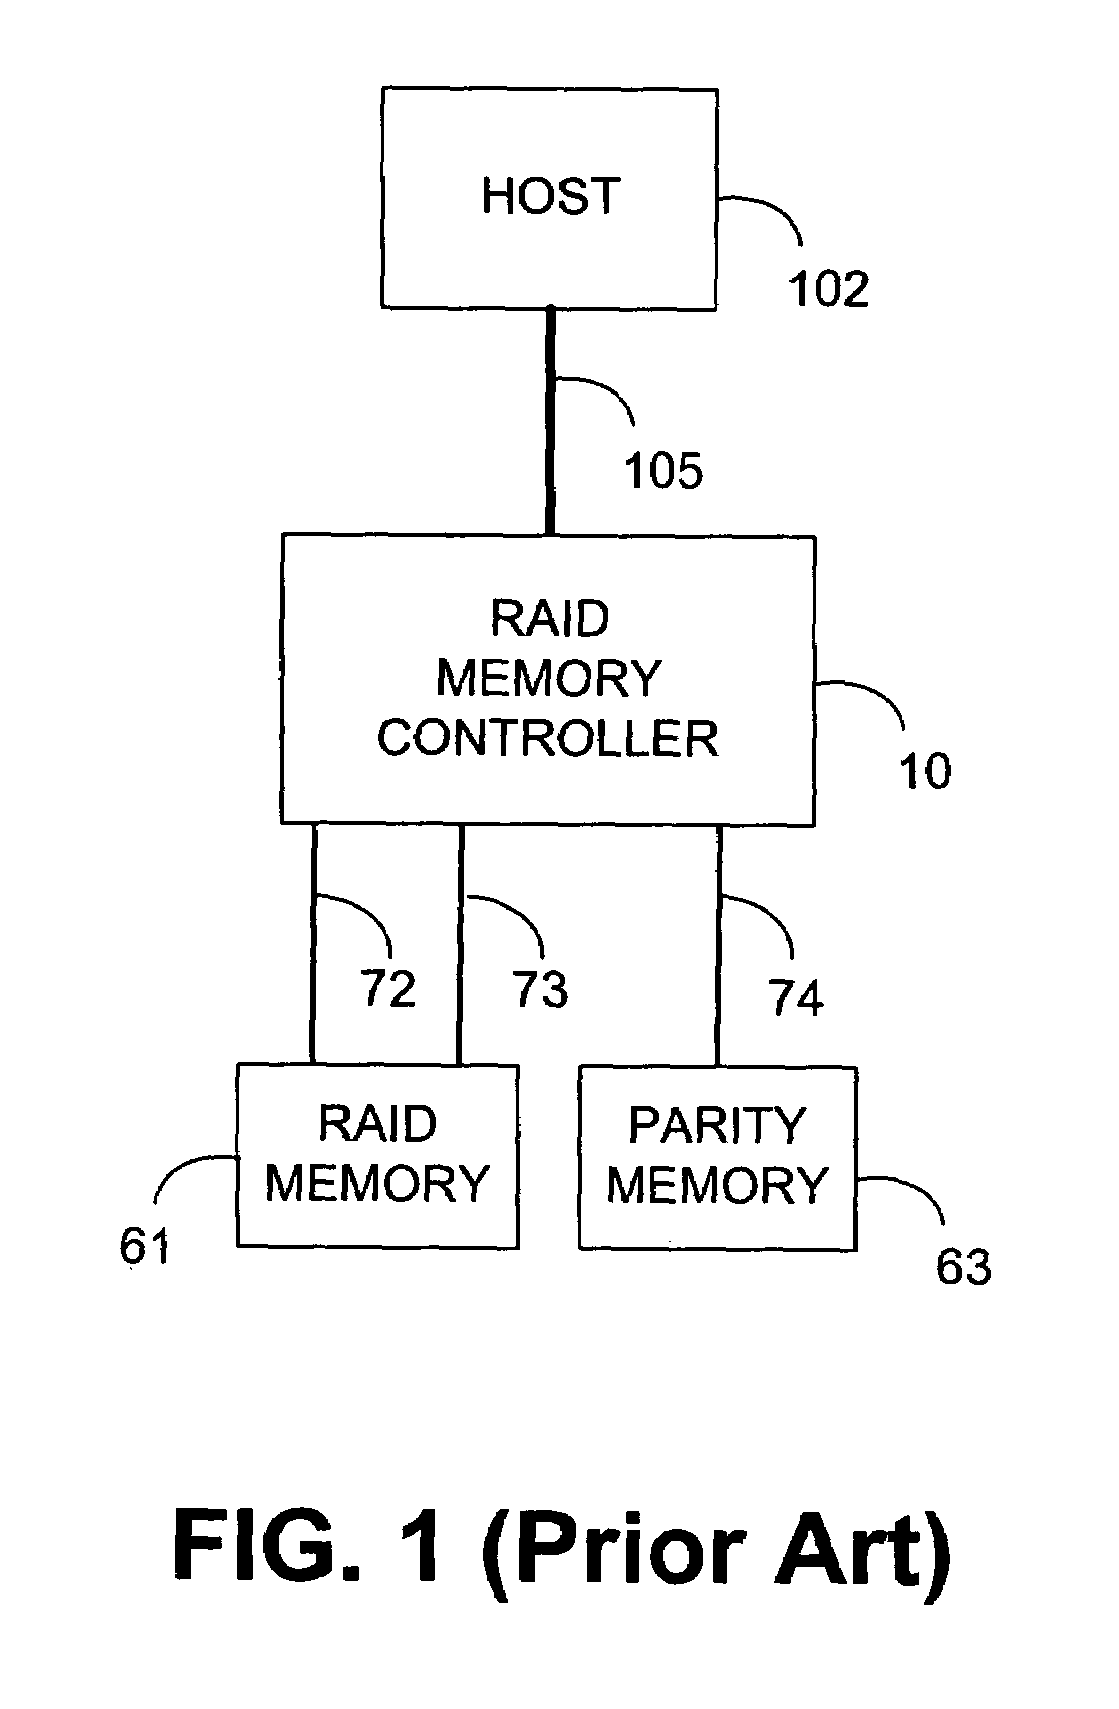 RAID memory system